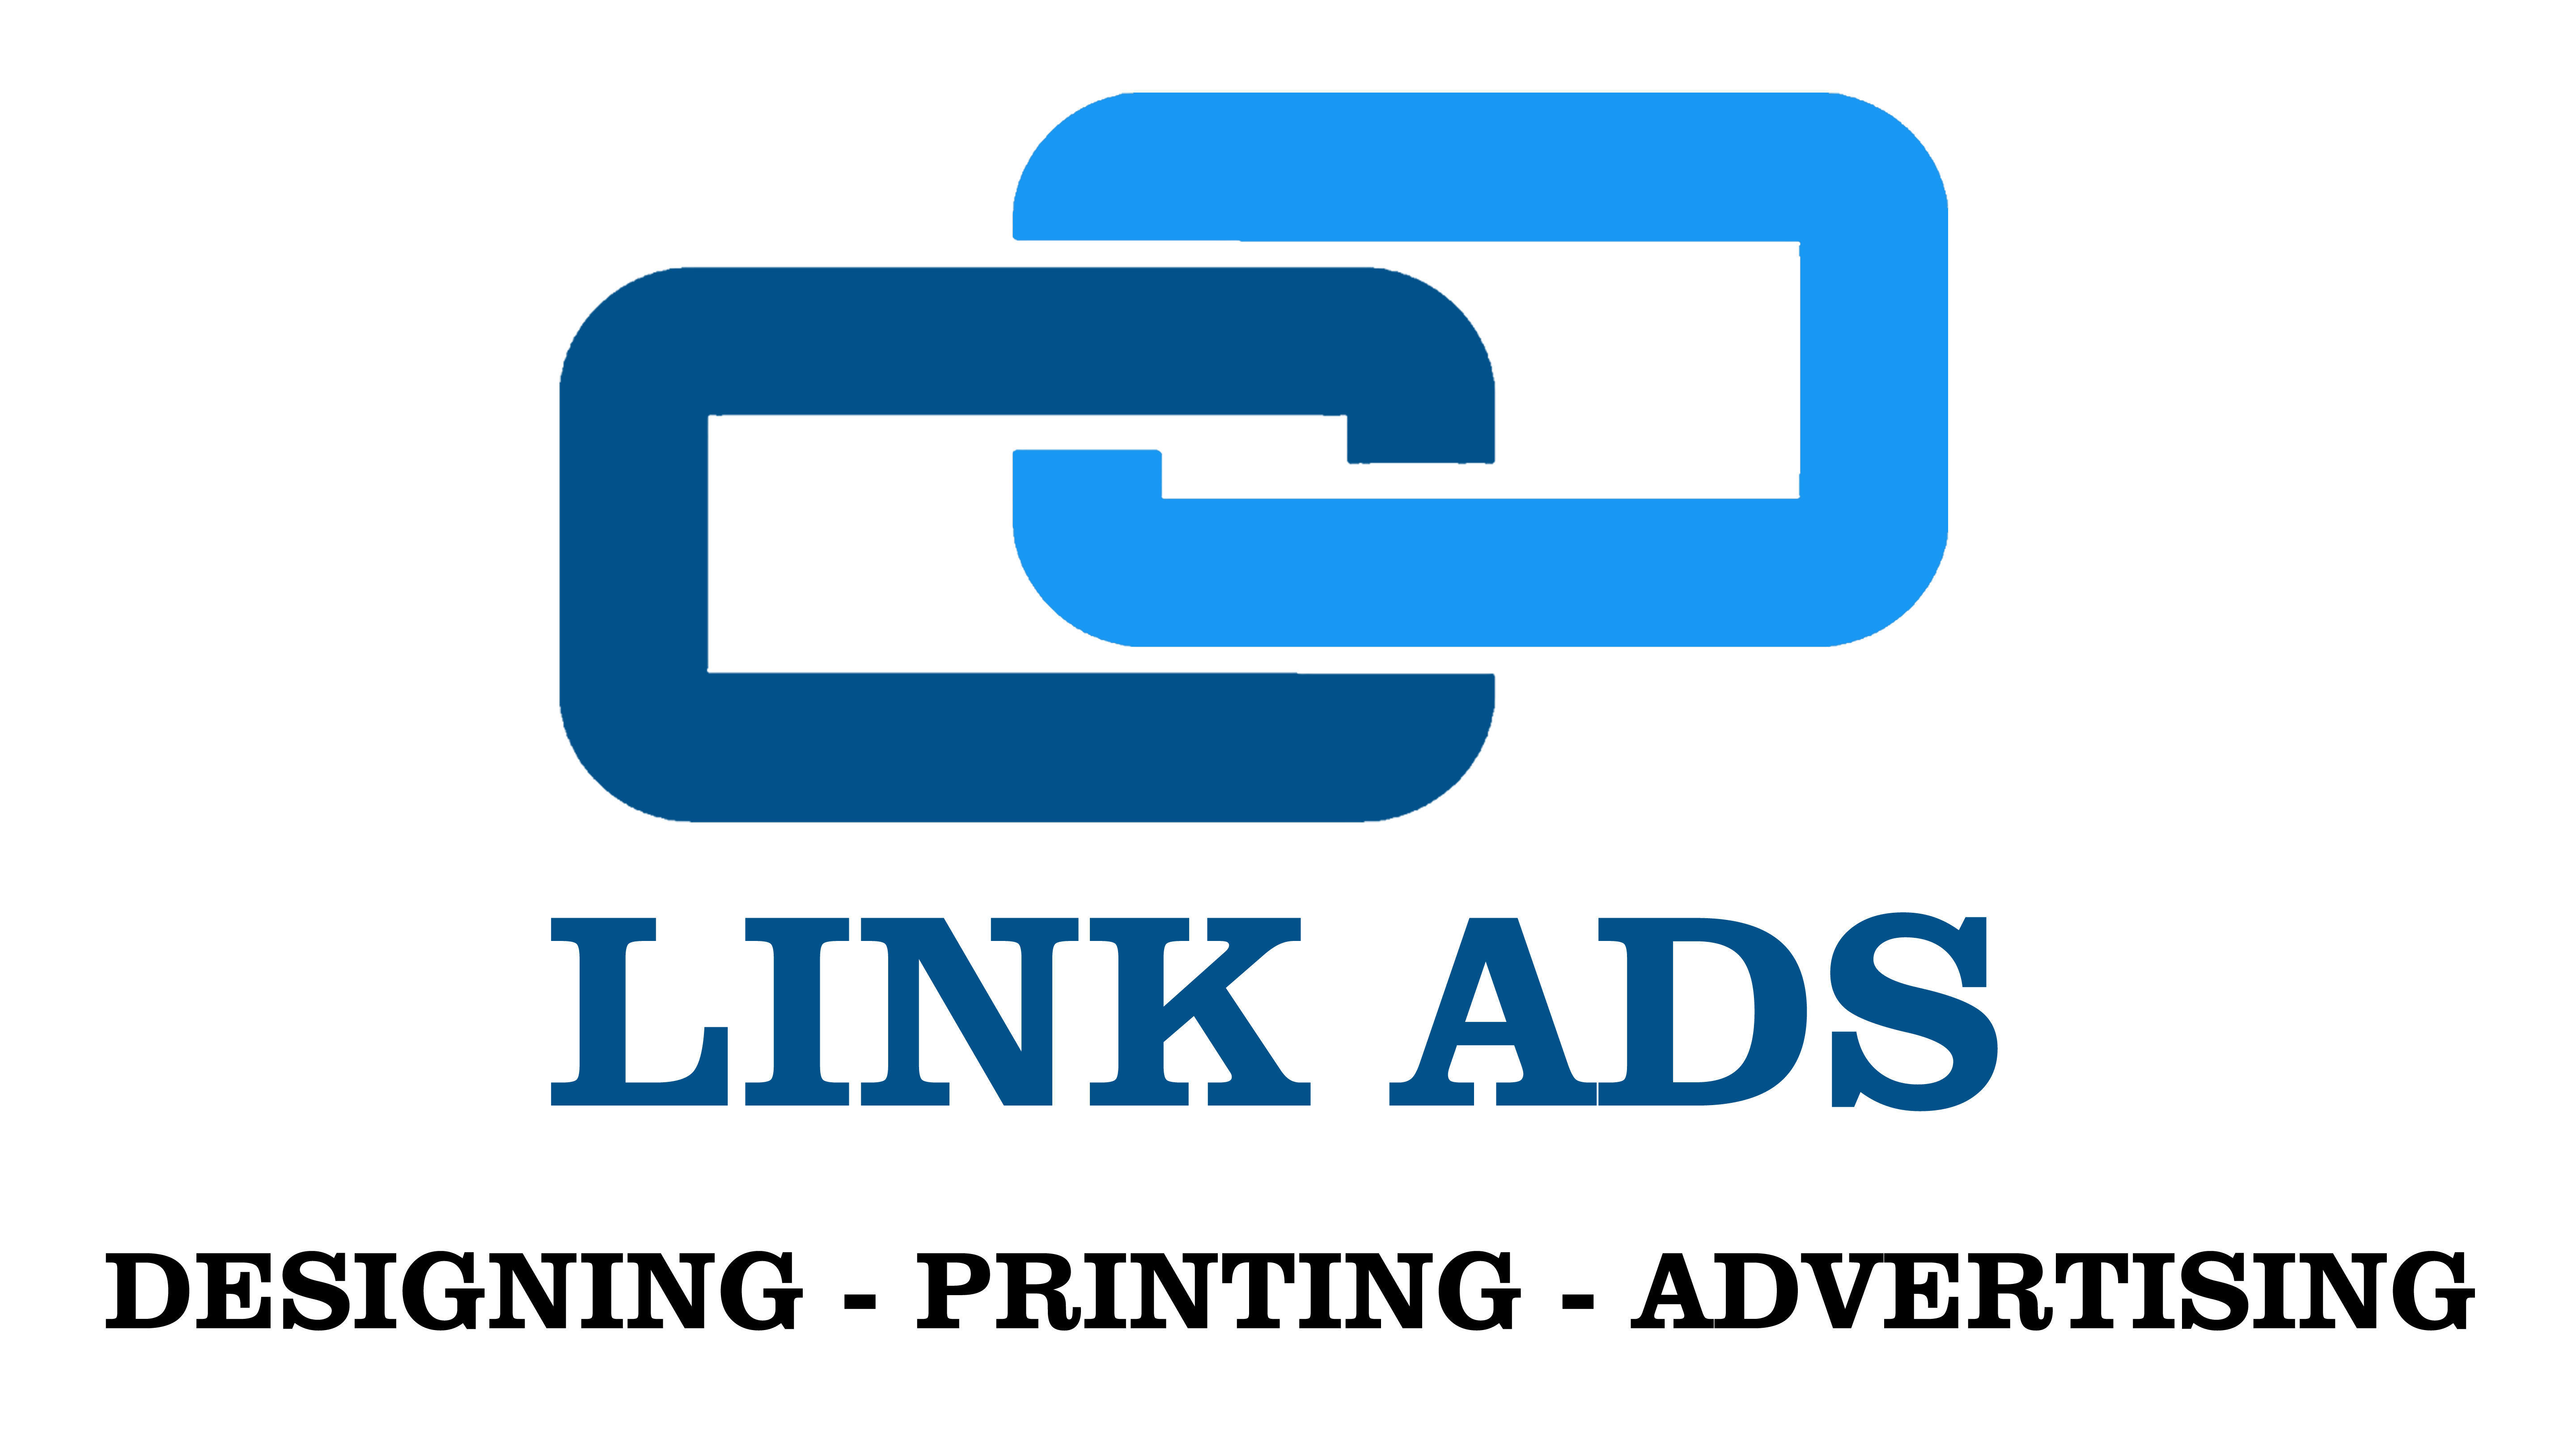 Link ads